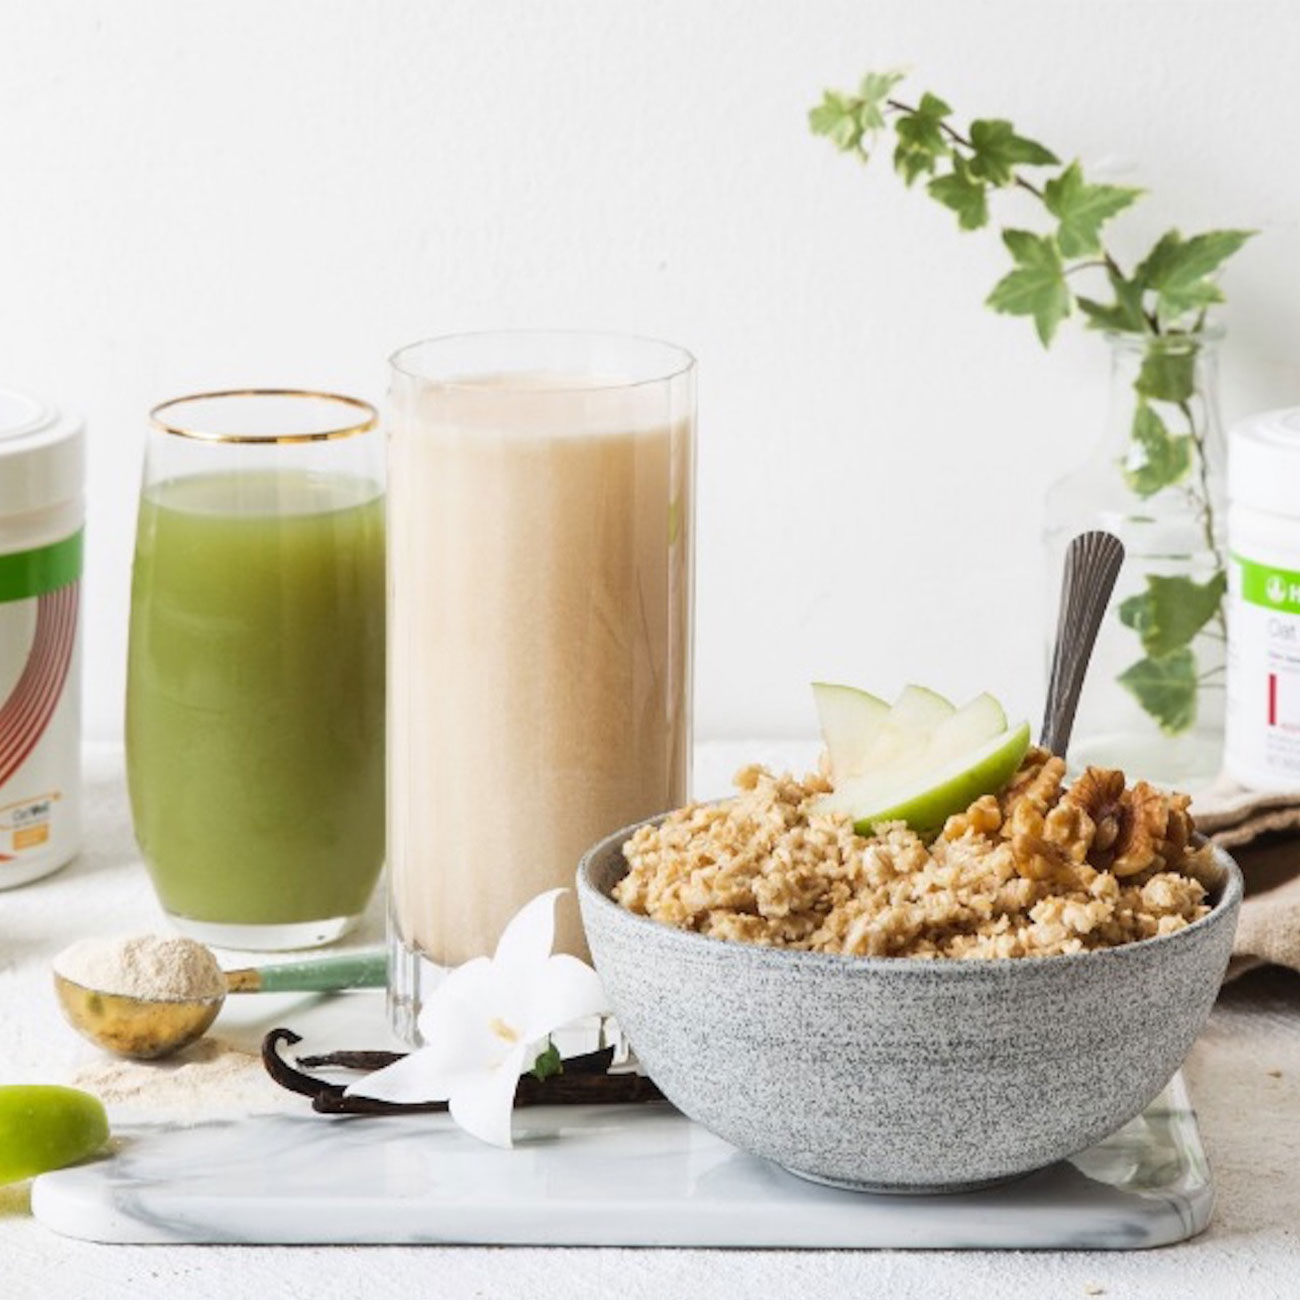 Schale mit Porridge, Apfelsaft und Herbalife Nutrition Shake auf einem Marmortisch